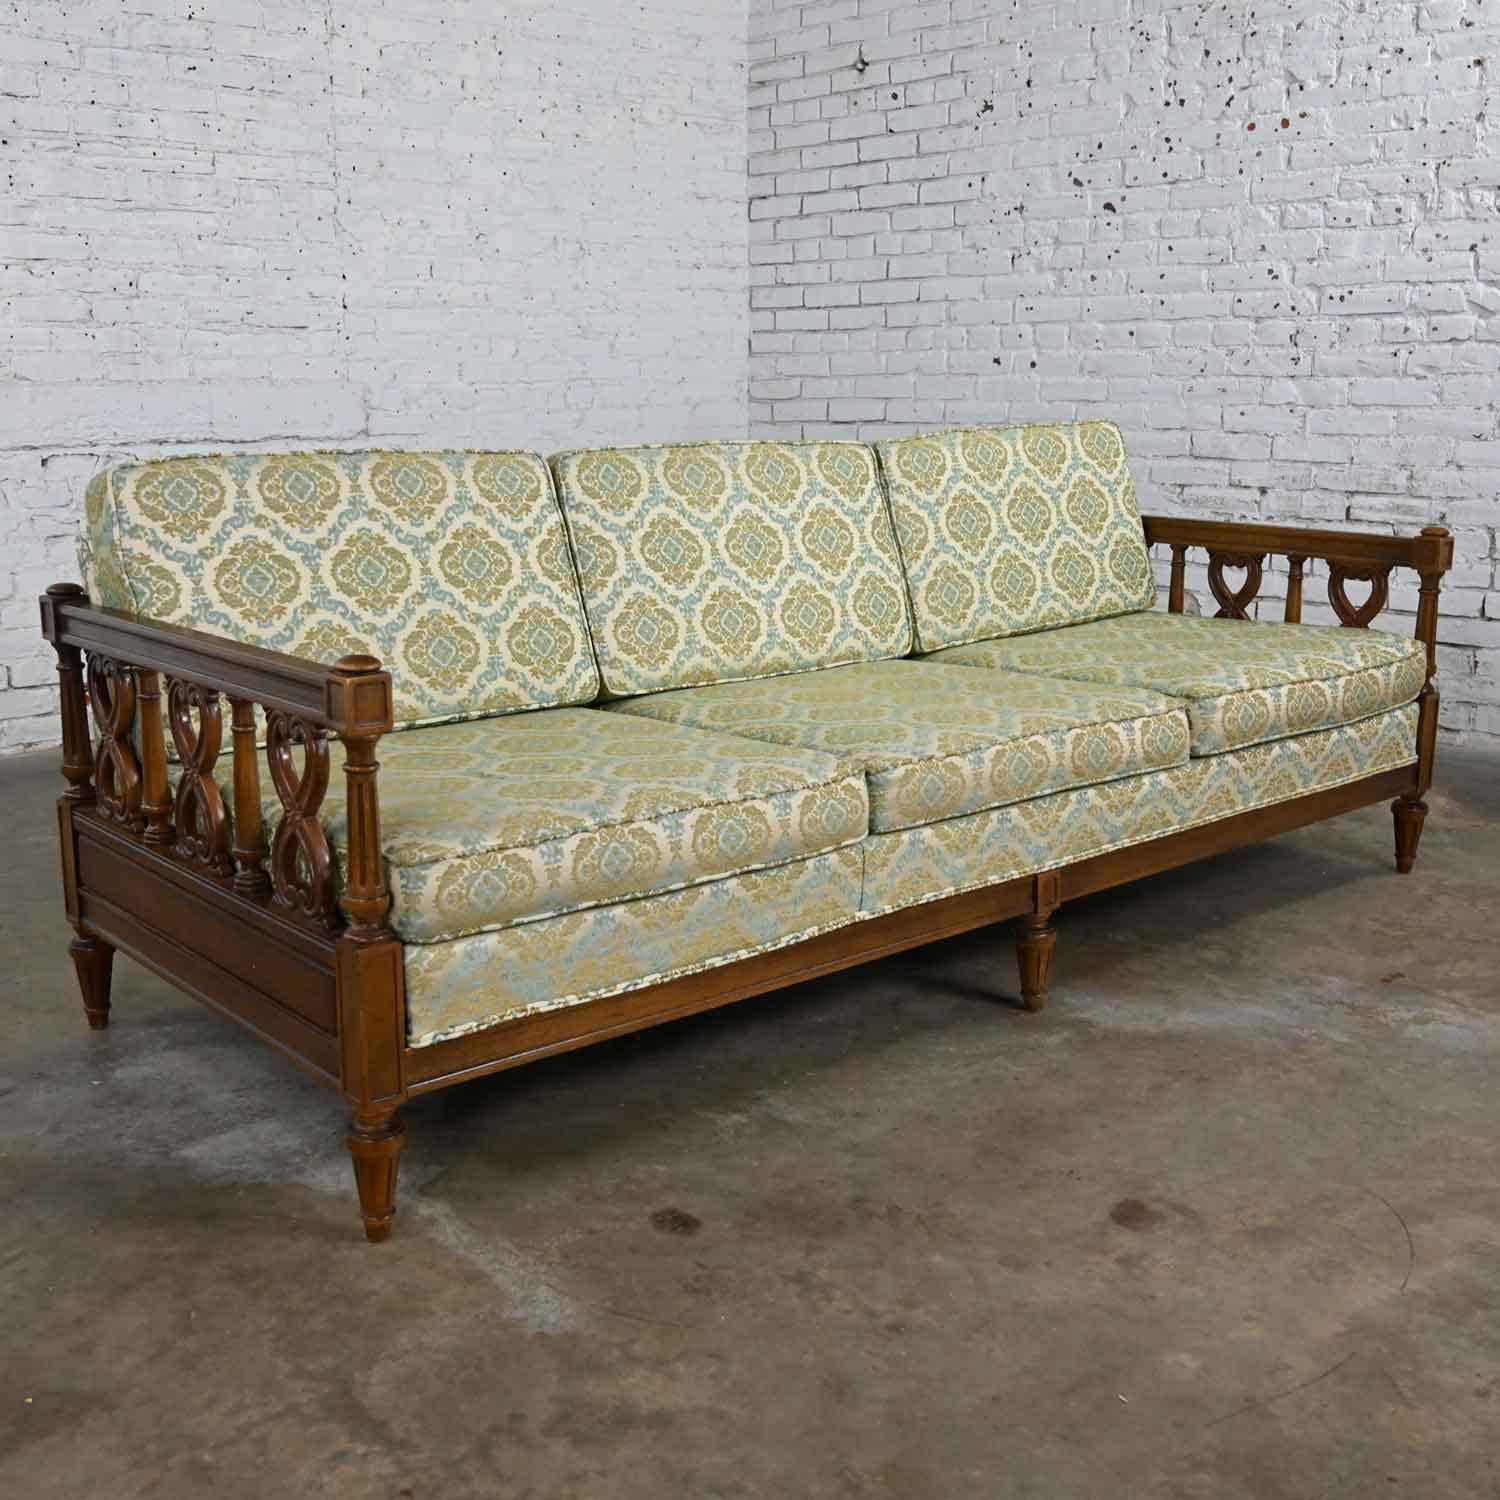 Vintage Mediterranean Spanish Revival Style Sofa Wood Details by American Furn 3